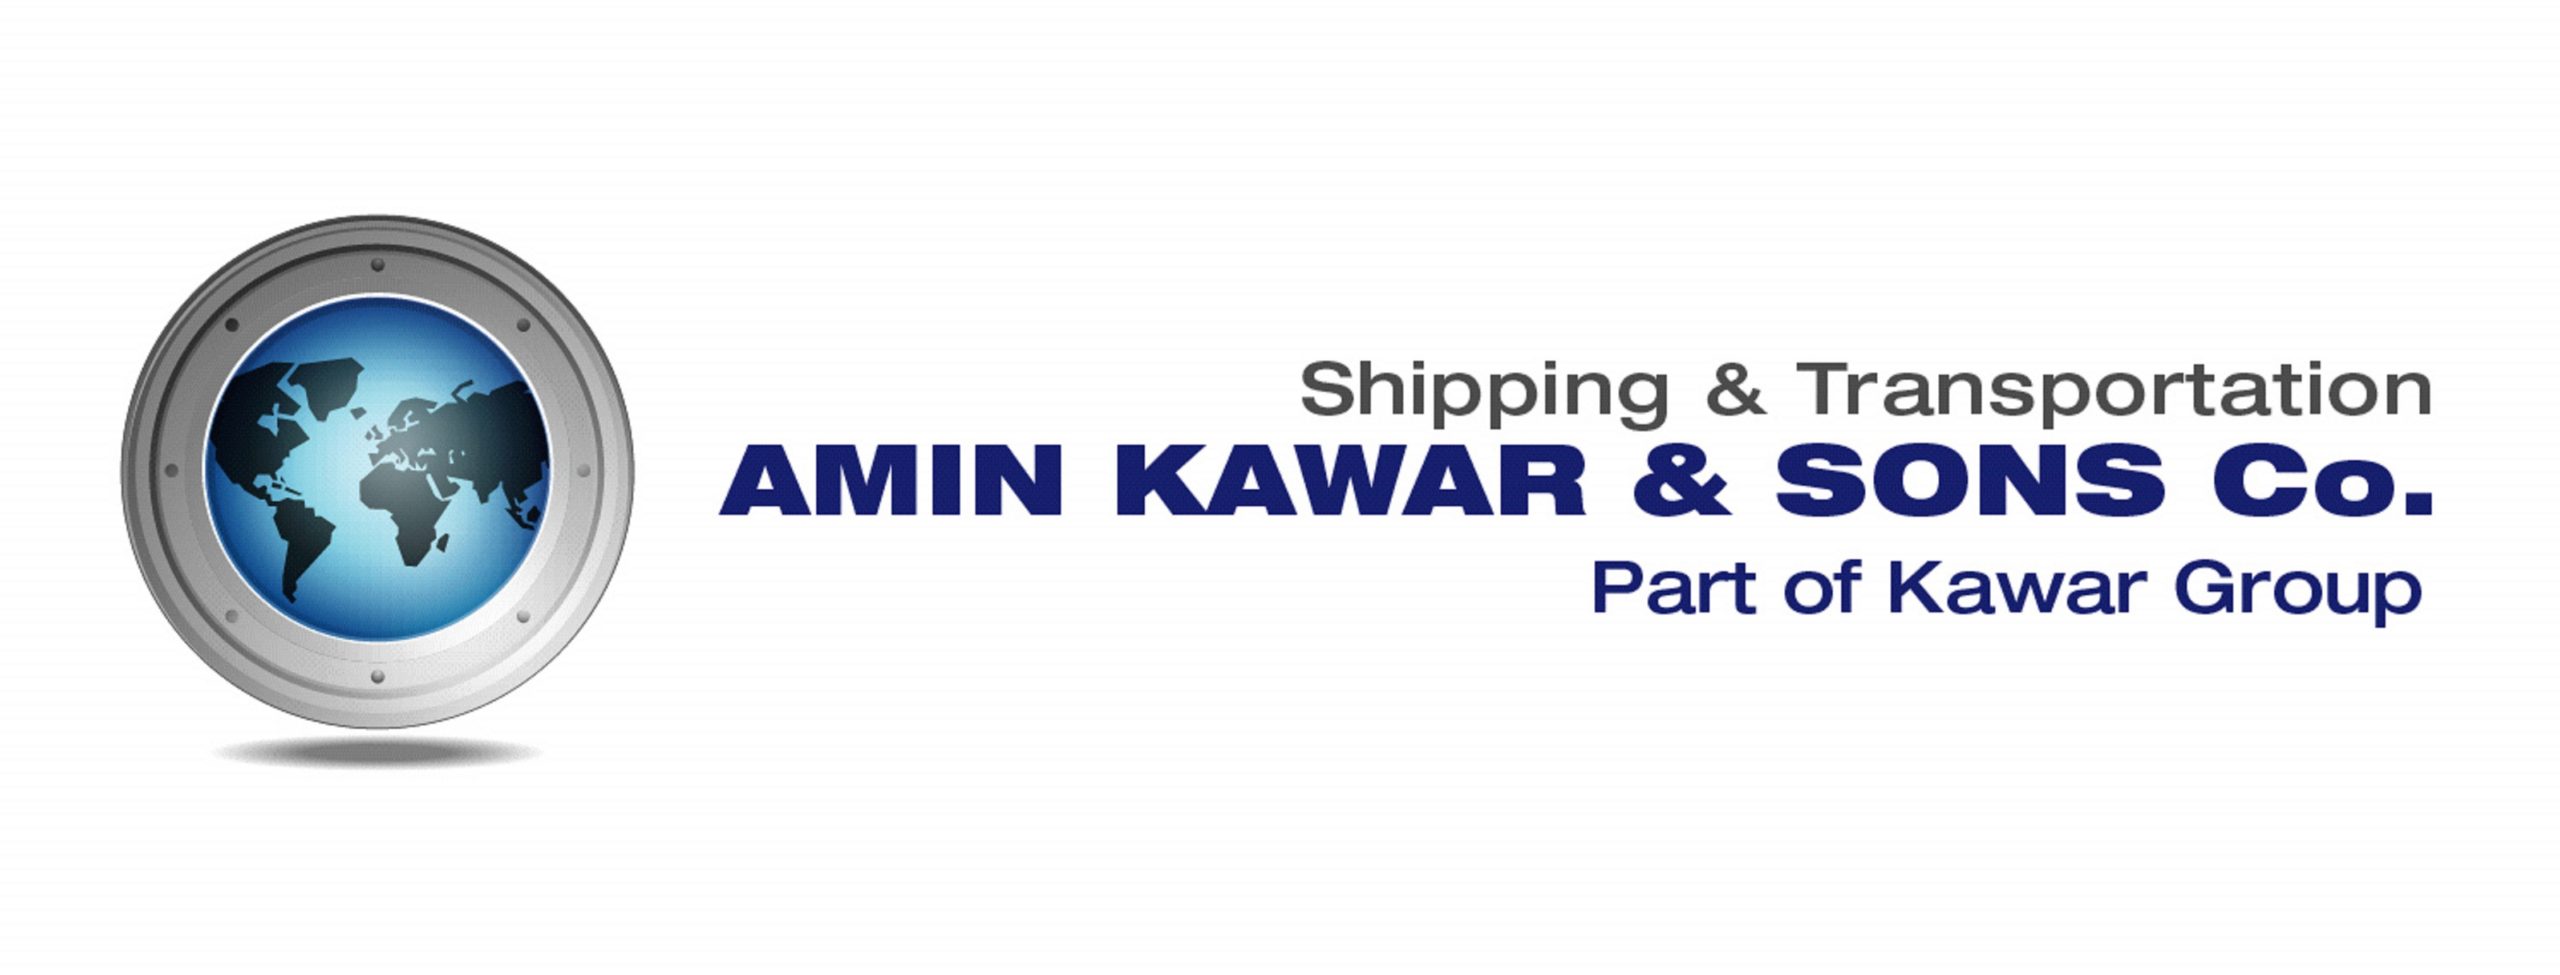 Amin Kawar And Sons Company W.L.L.